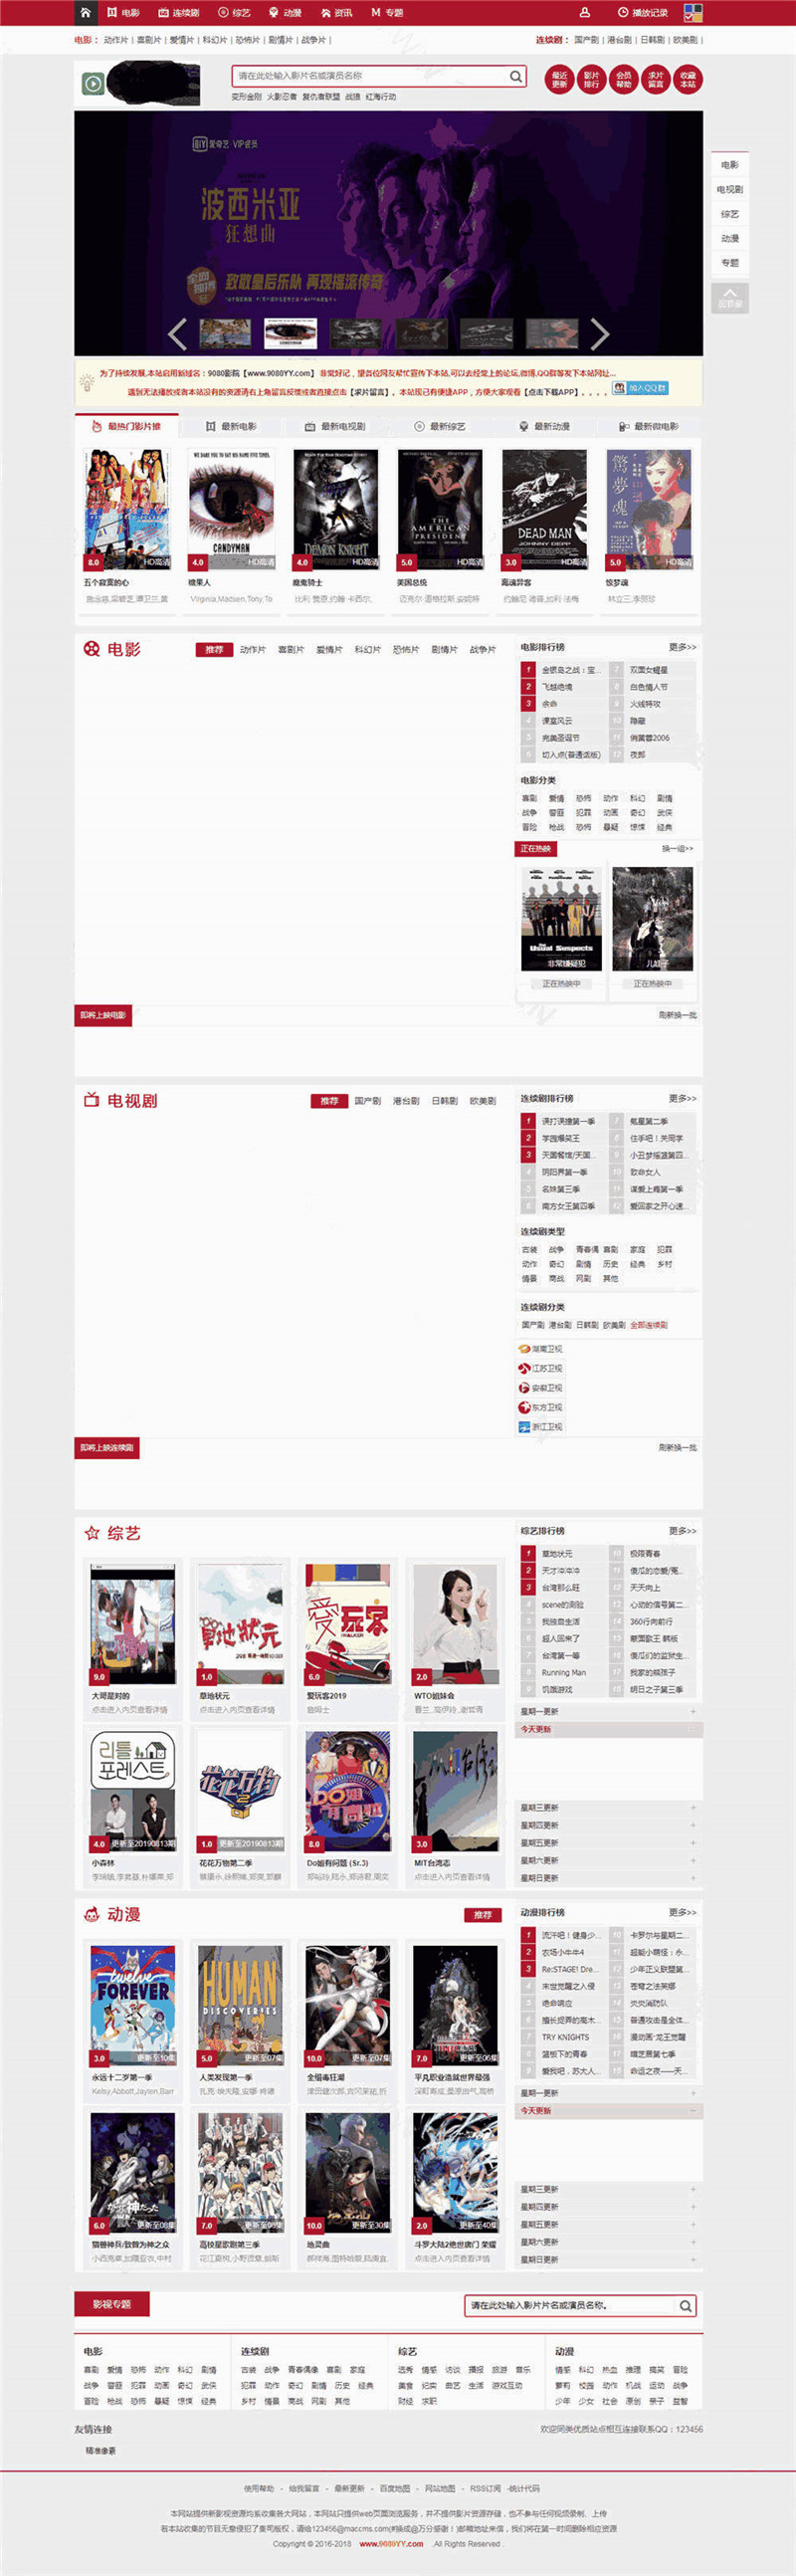 仿红色9080YY电影网站苹果CMS模板预览图